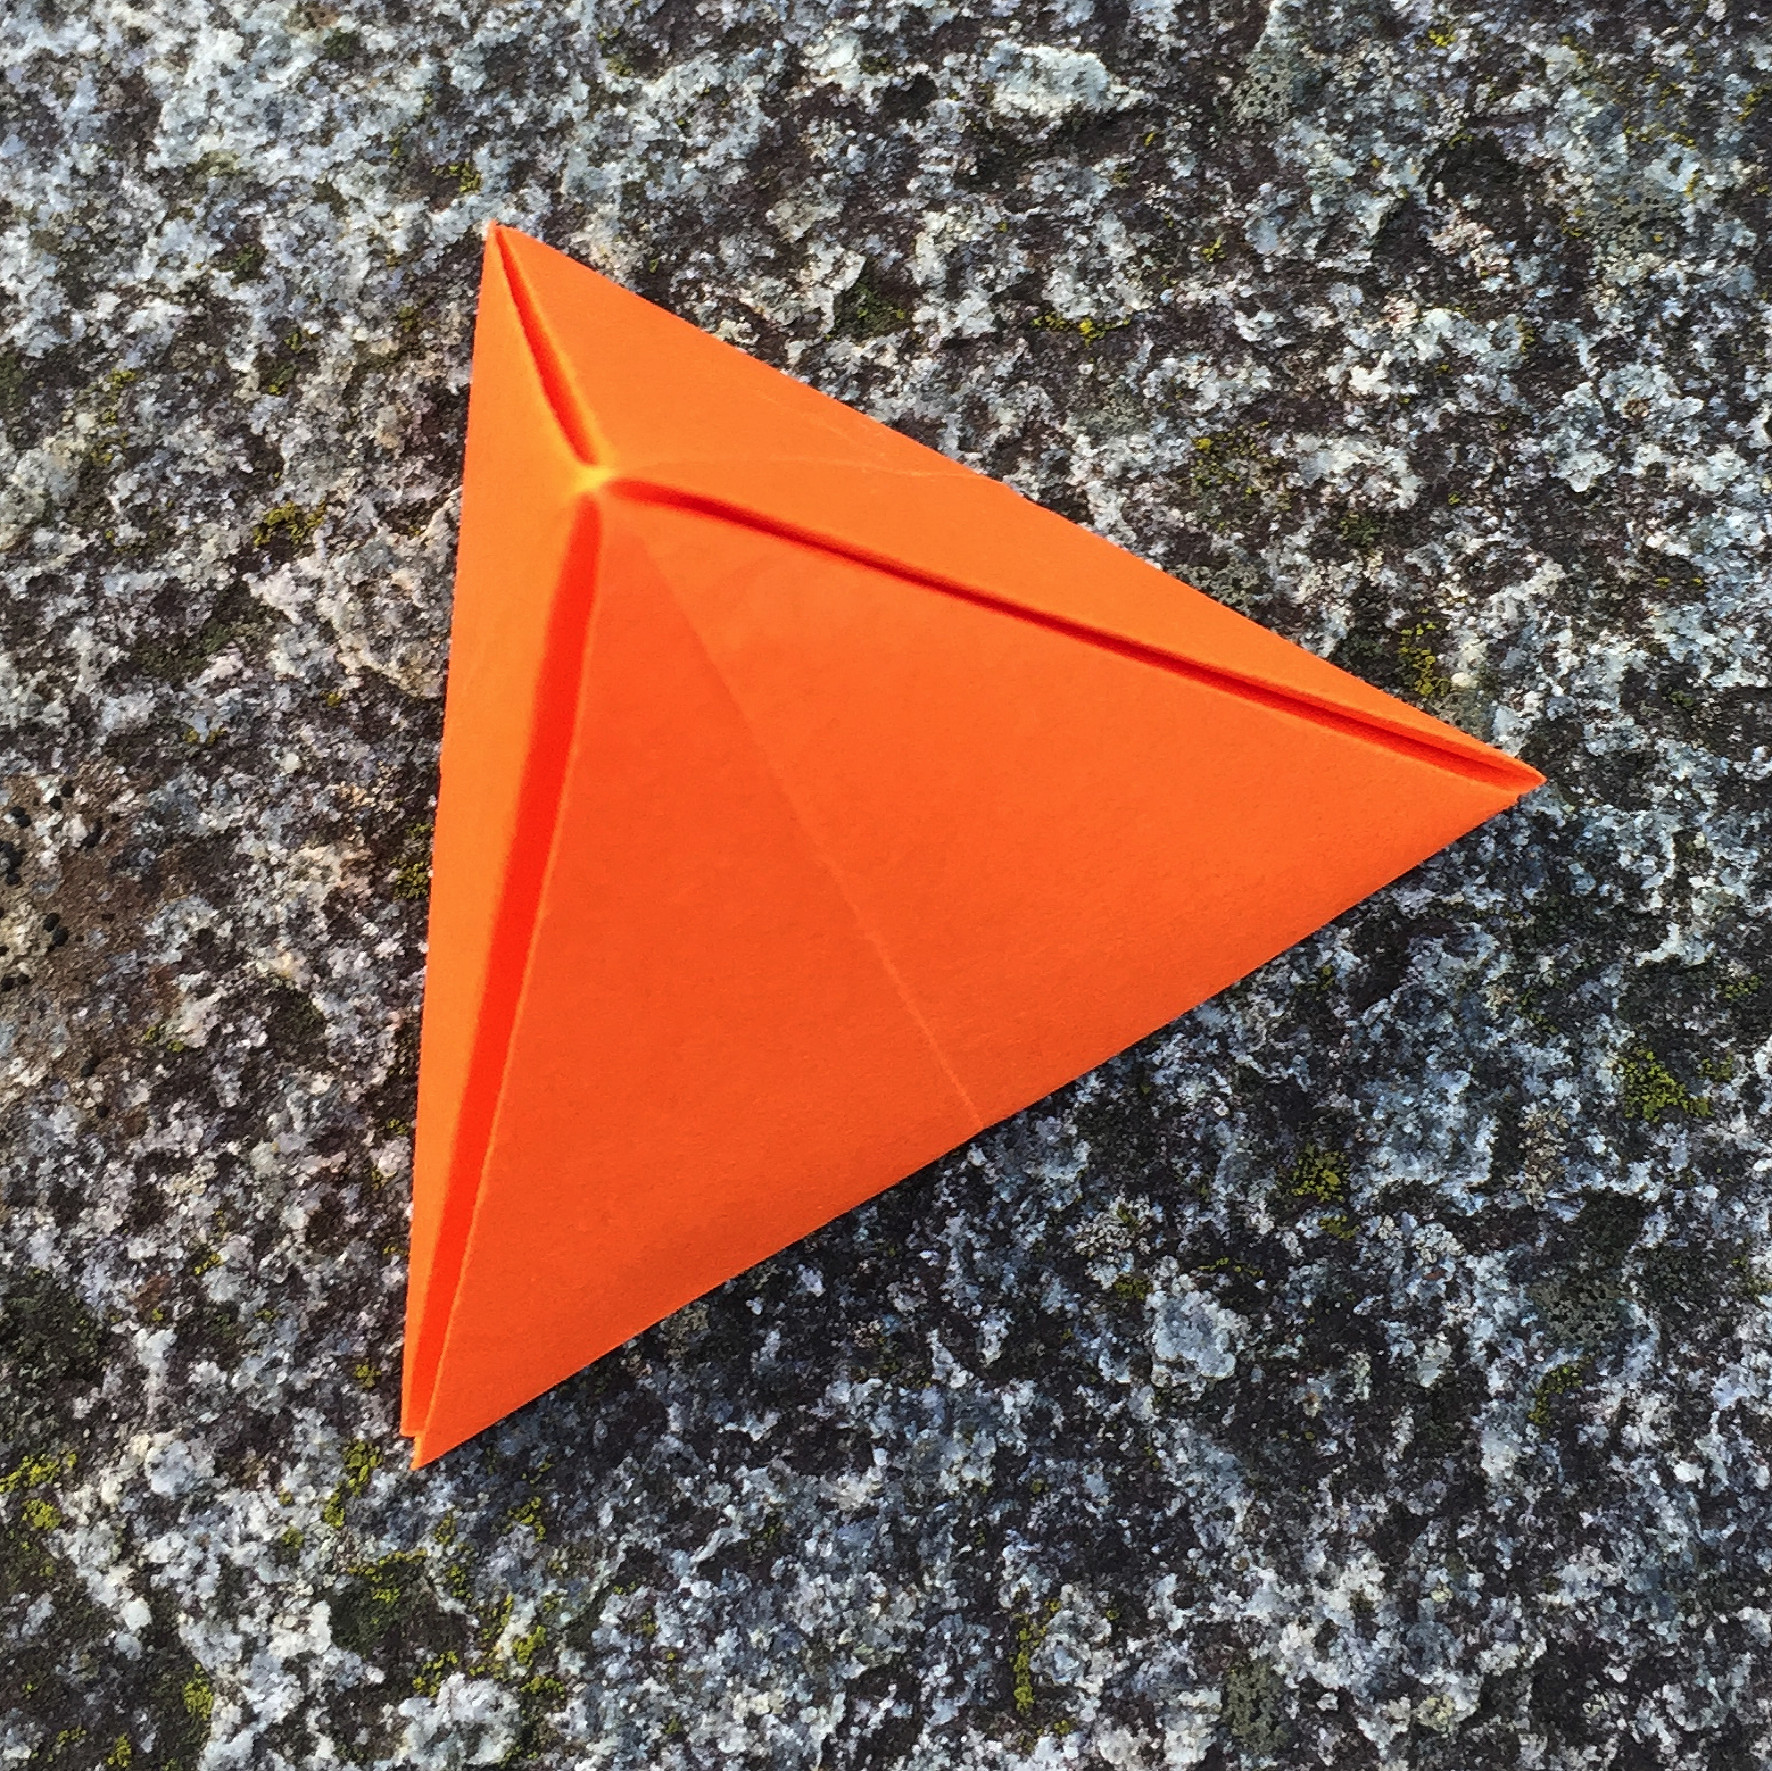 Ein Bild, das Gelände, Hütchen, Dreieck, orange enthält.

Automatisch generierte Beschreibung